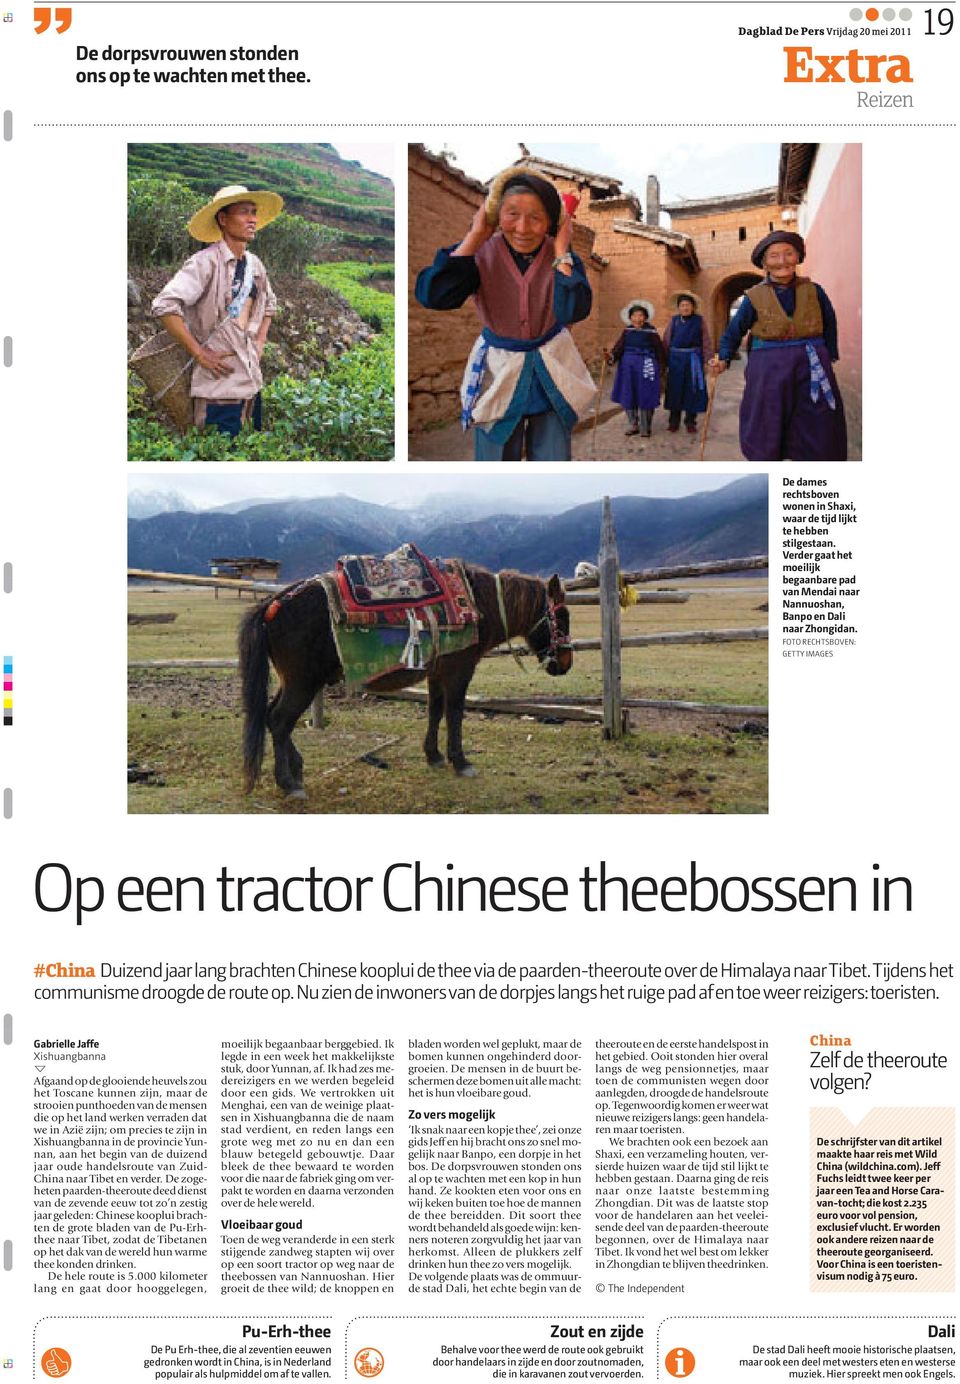 FOTO RECHTSBOVEN: GETTY IMAGES Op een tractor Chinese theebossen in #China Duizend jaar lang brachten Chinese kooplui de thee via de paarden-theeroute over de Himalaya naar Tibet.